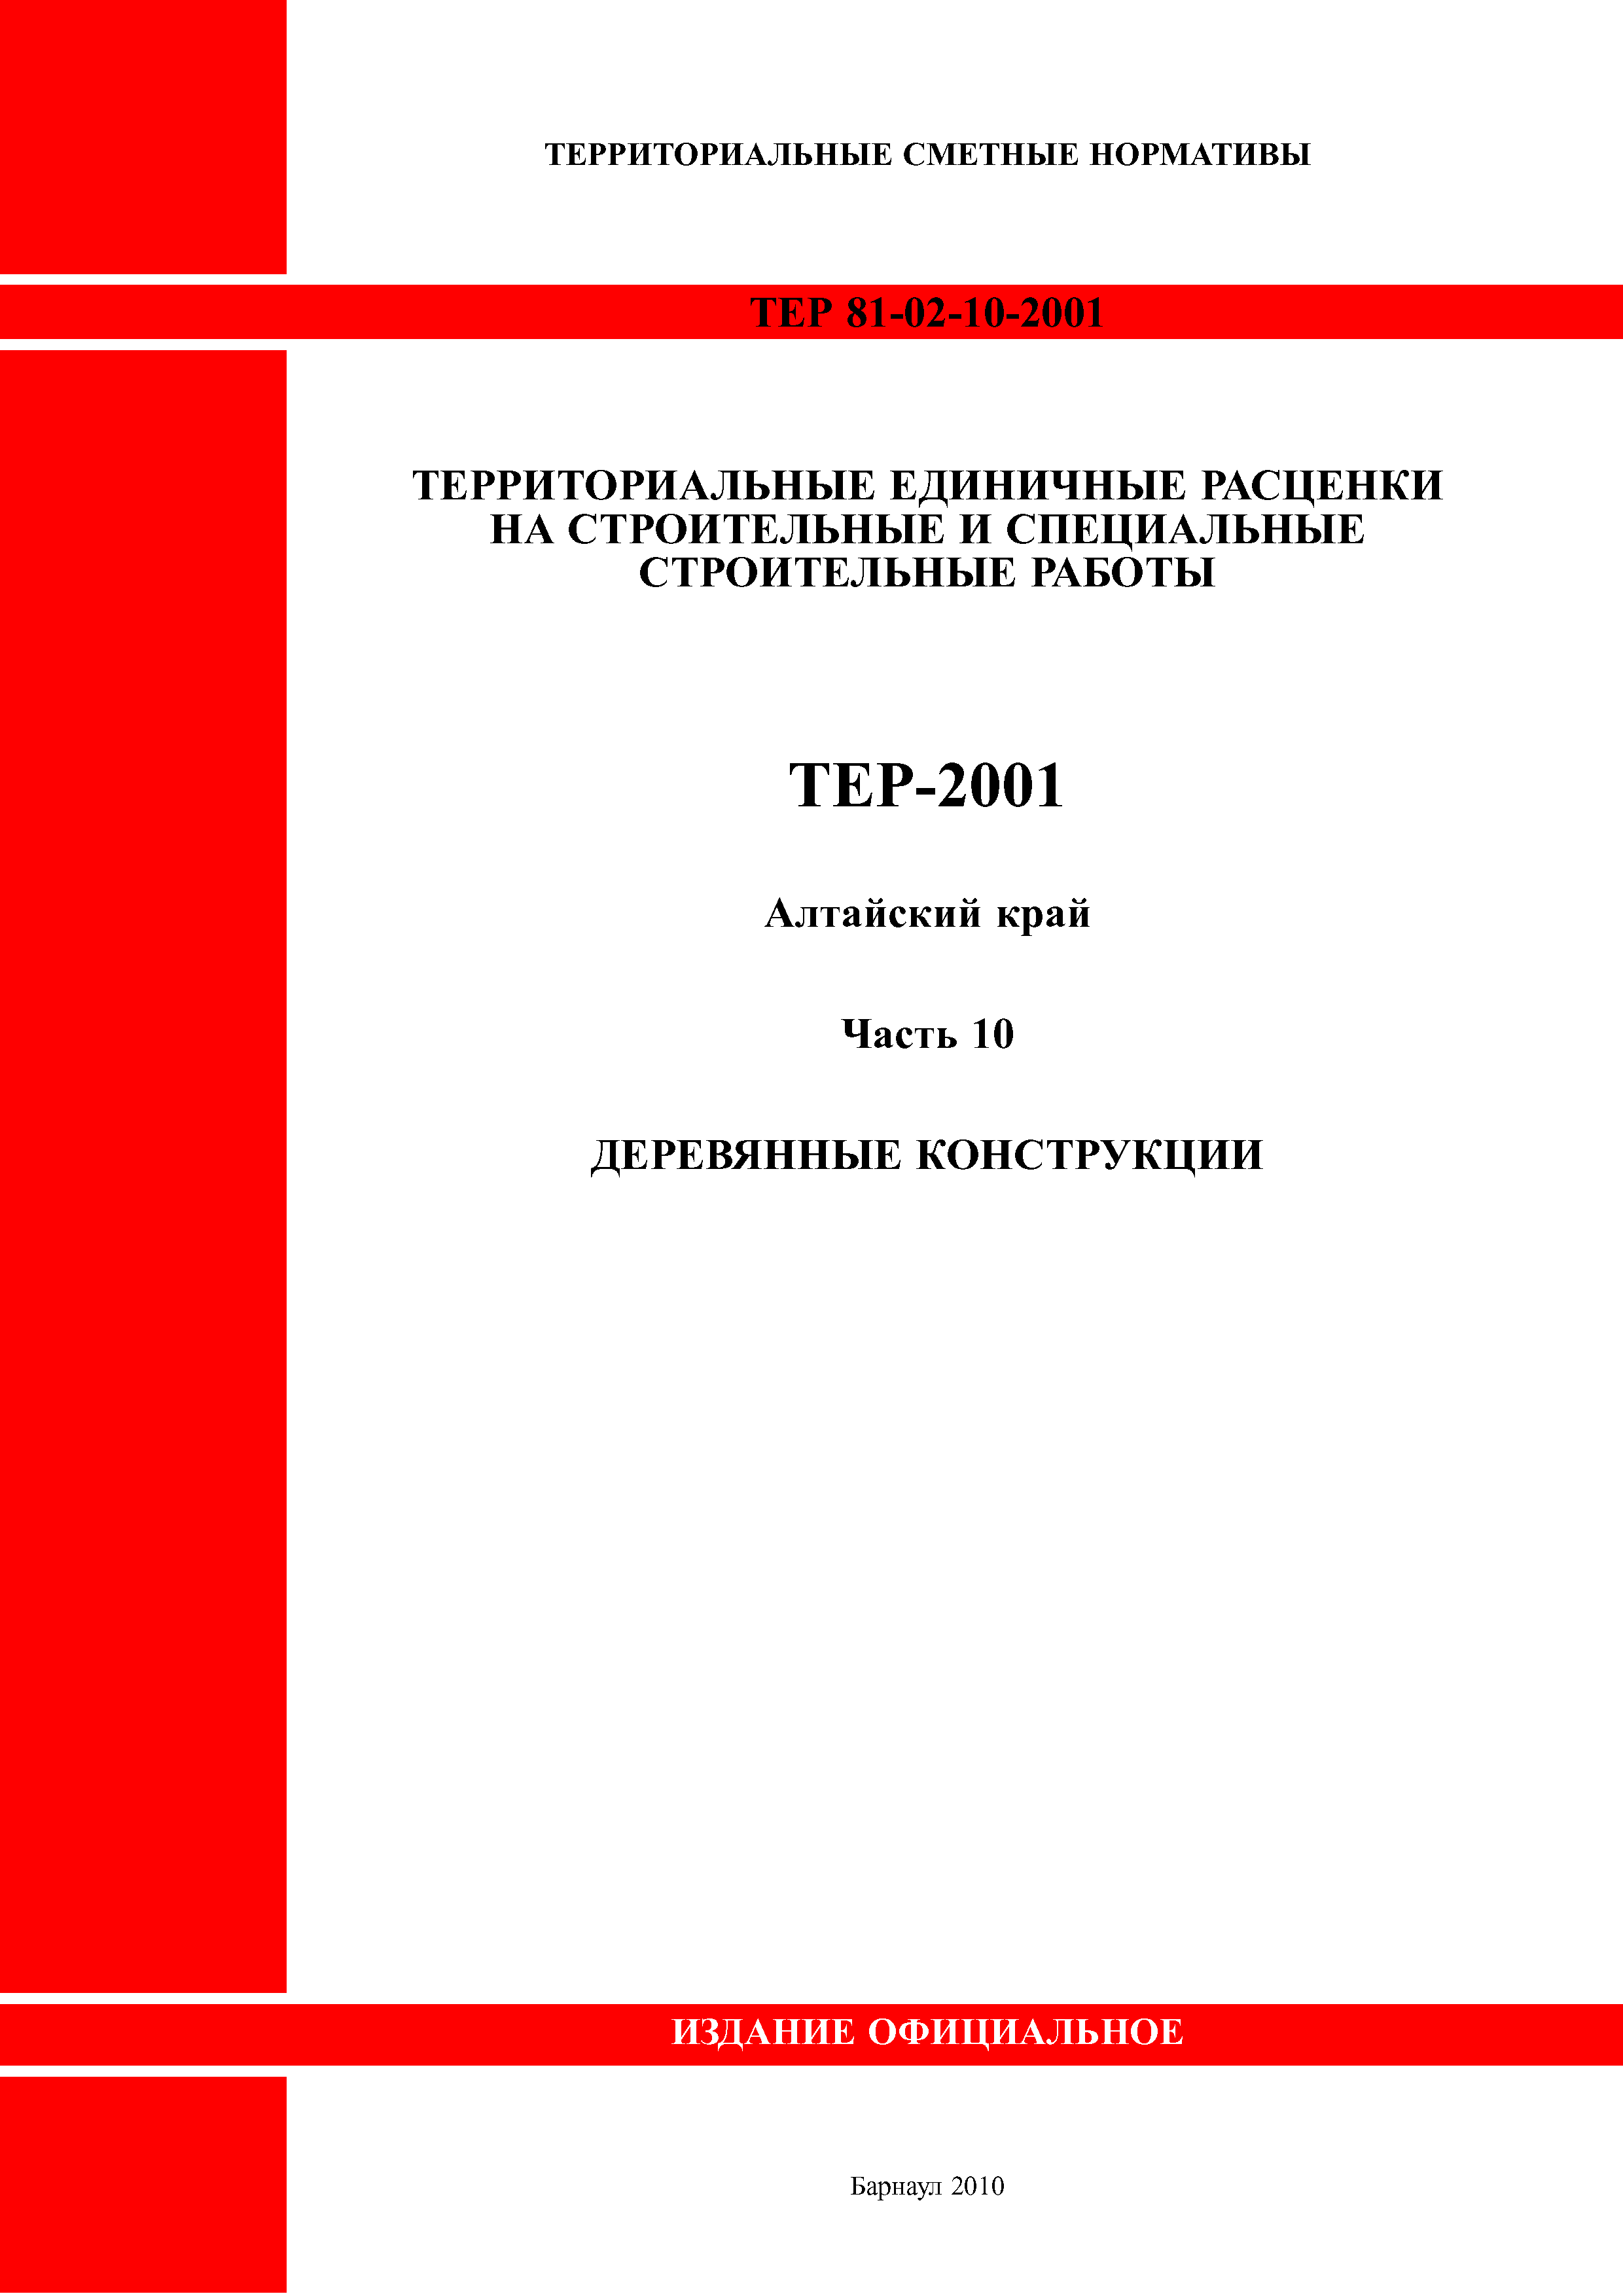 ТЕР Алтайский край 2001-10